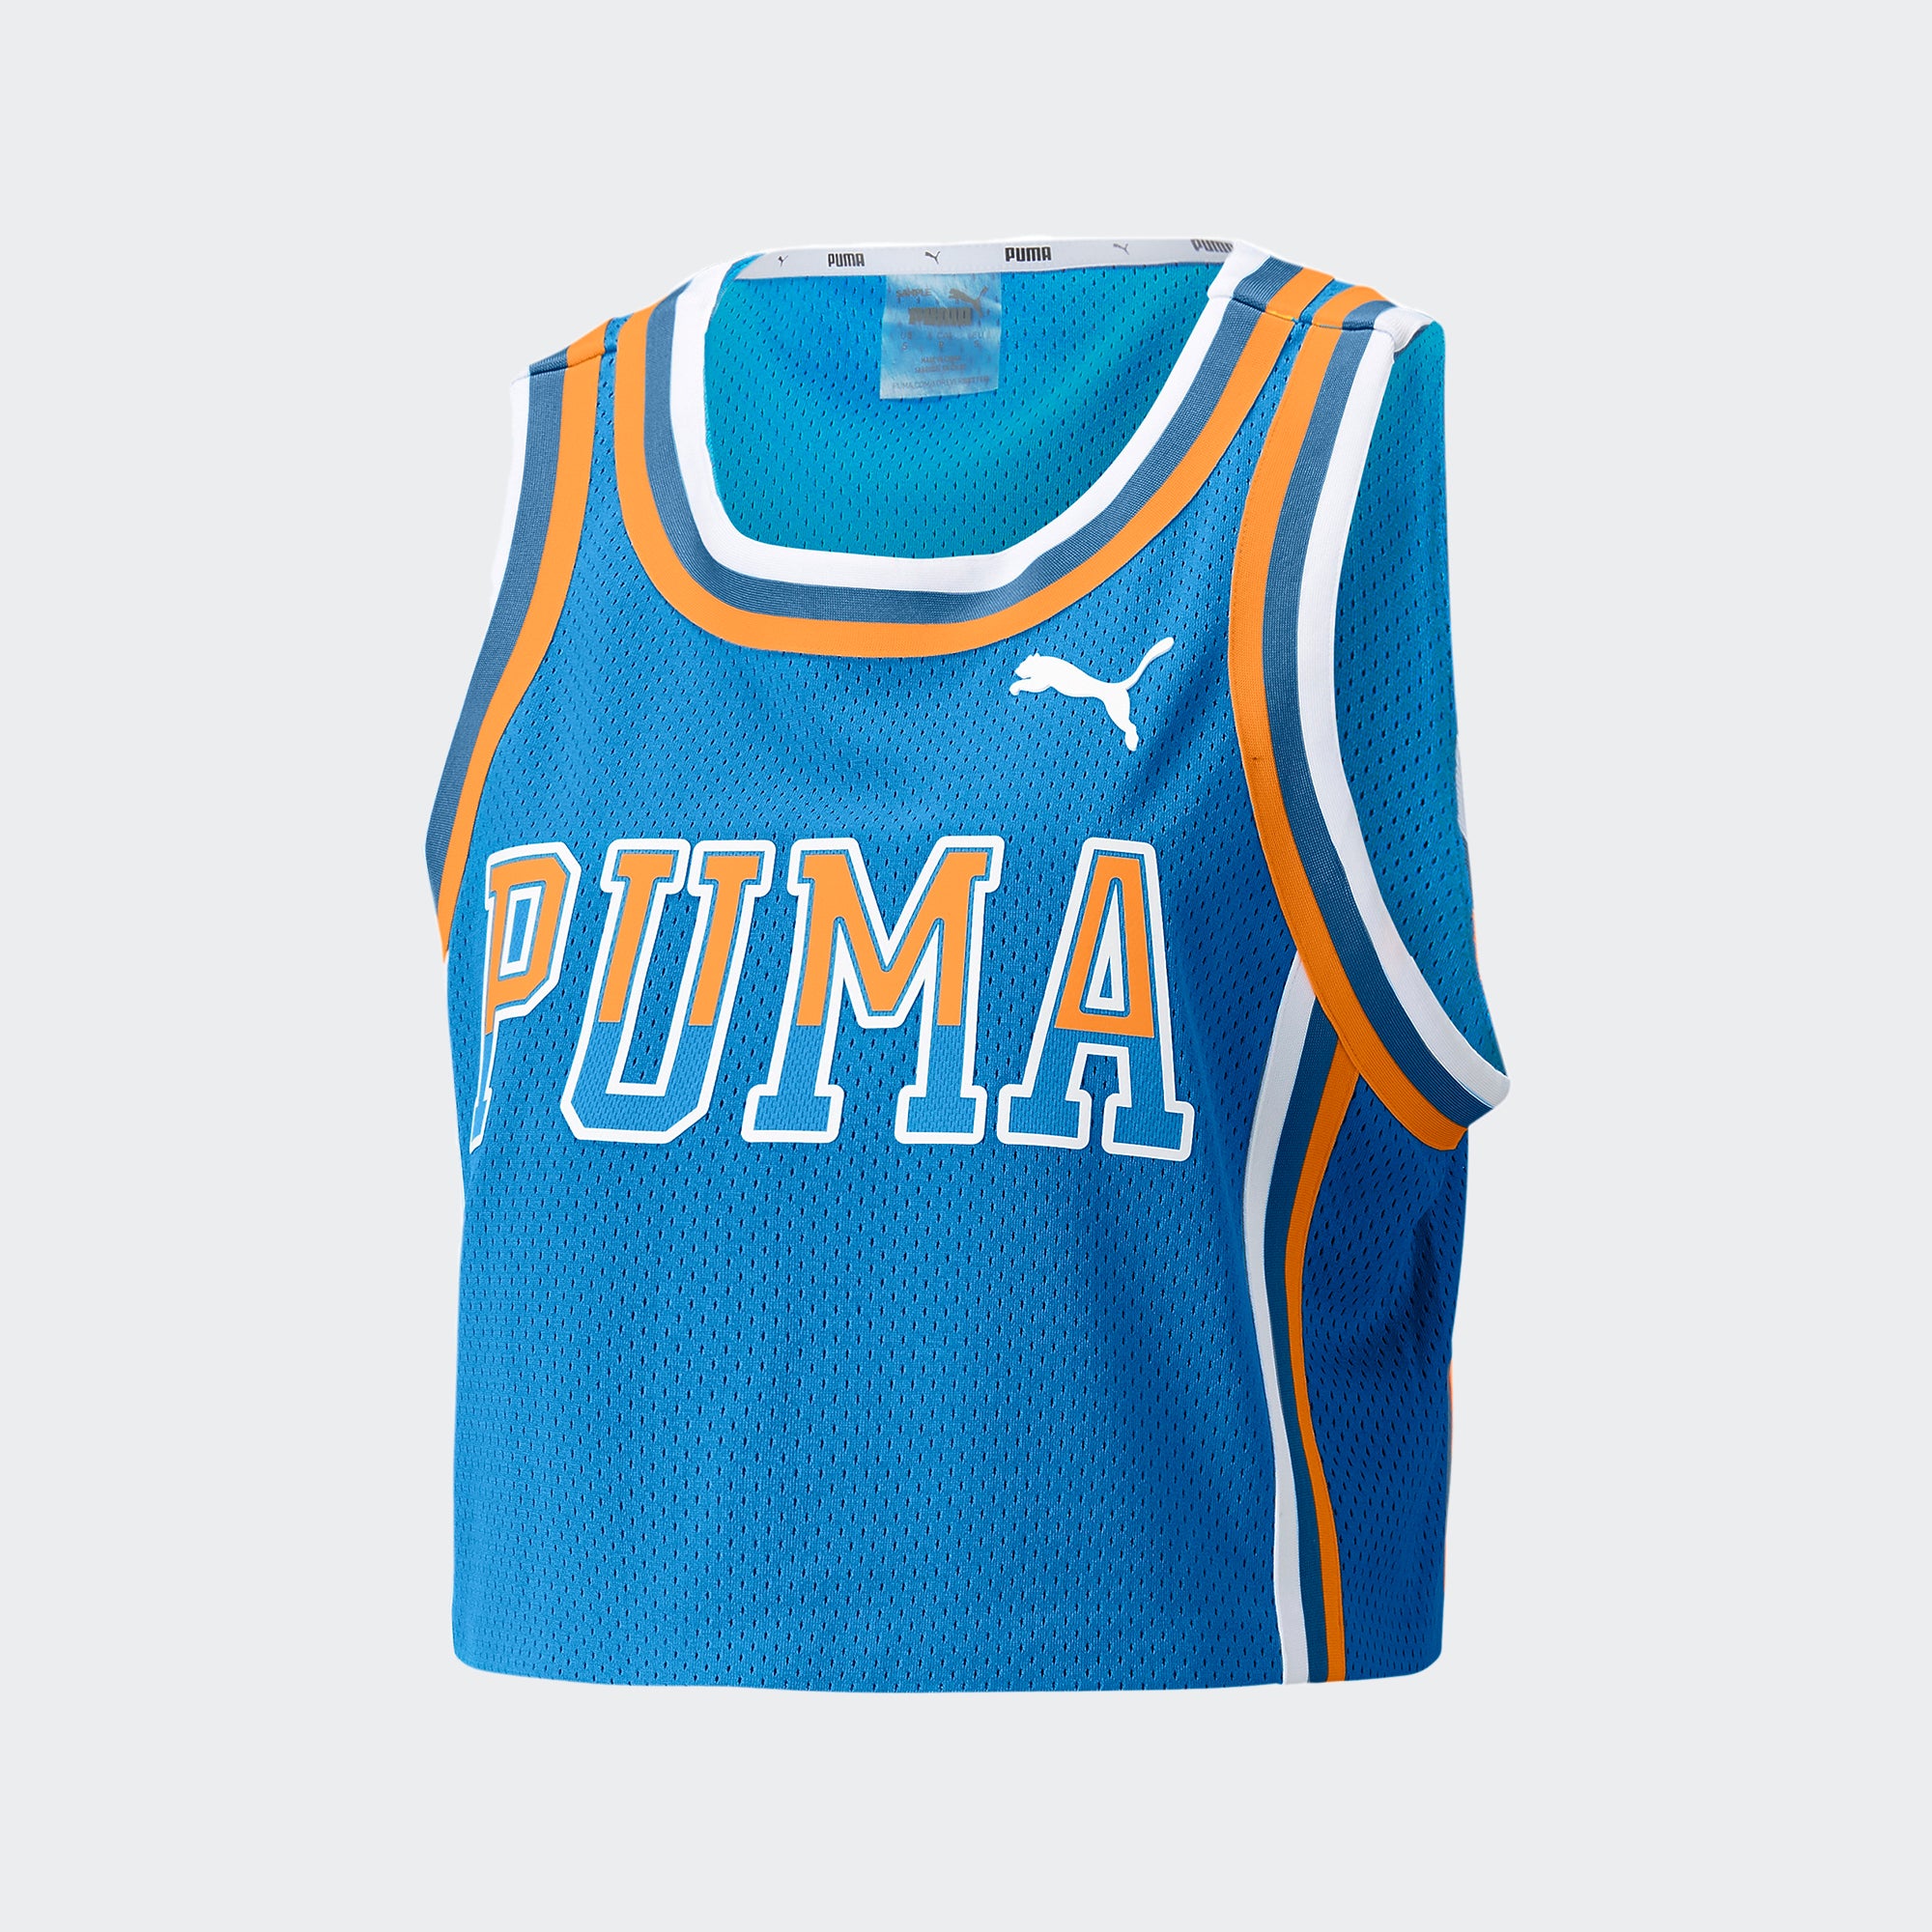 PUMA Ballin' Printed Cropped Basketball Jersey